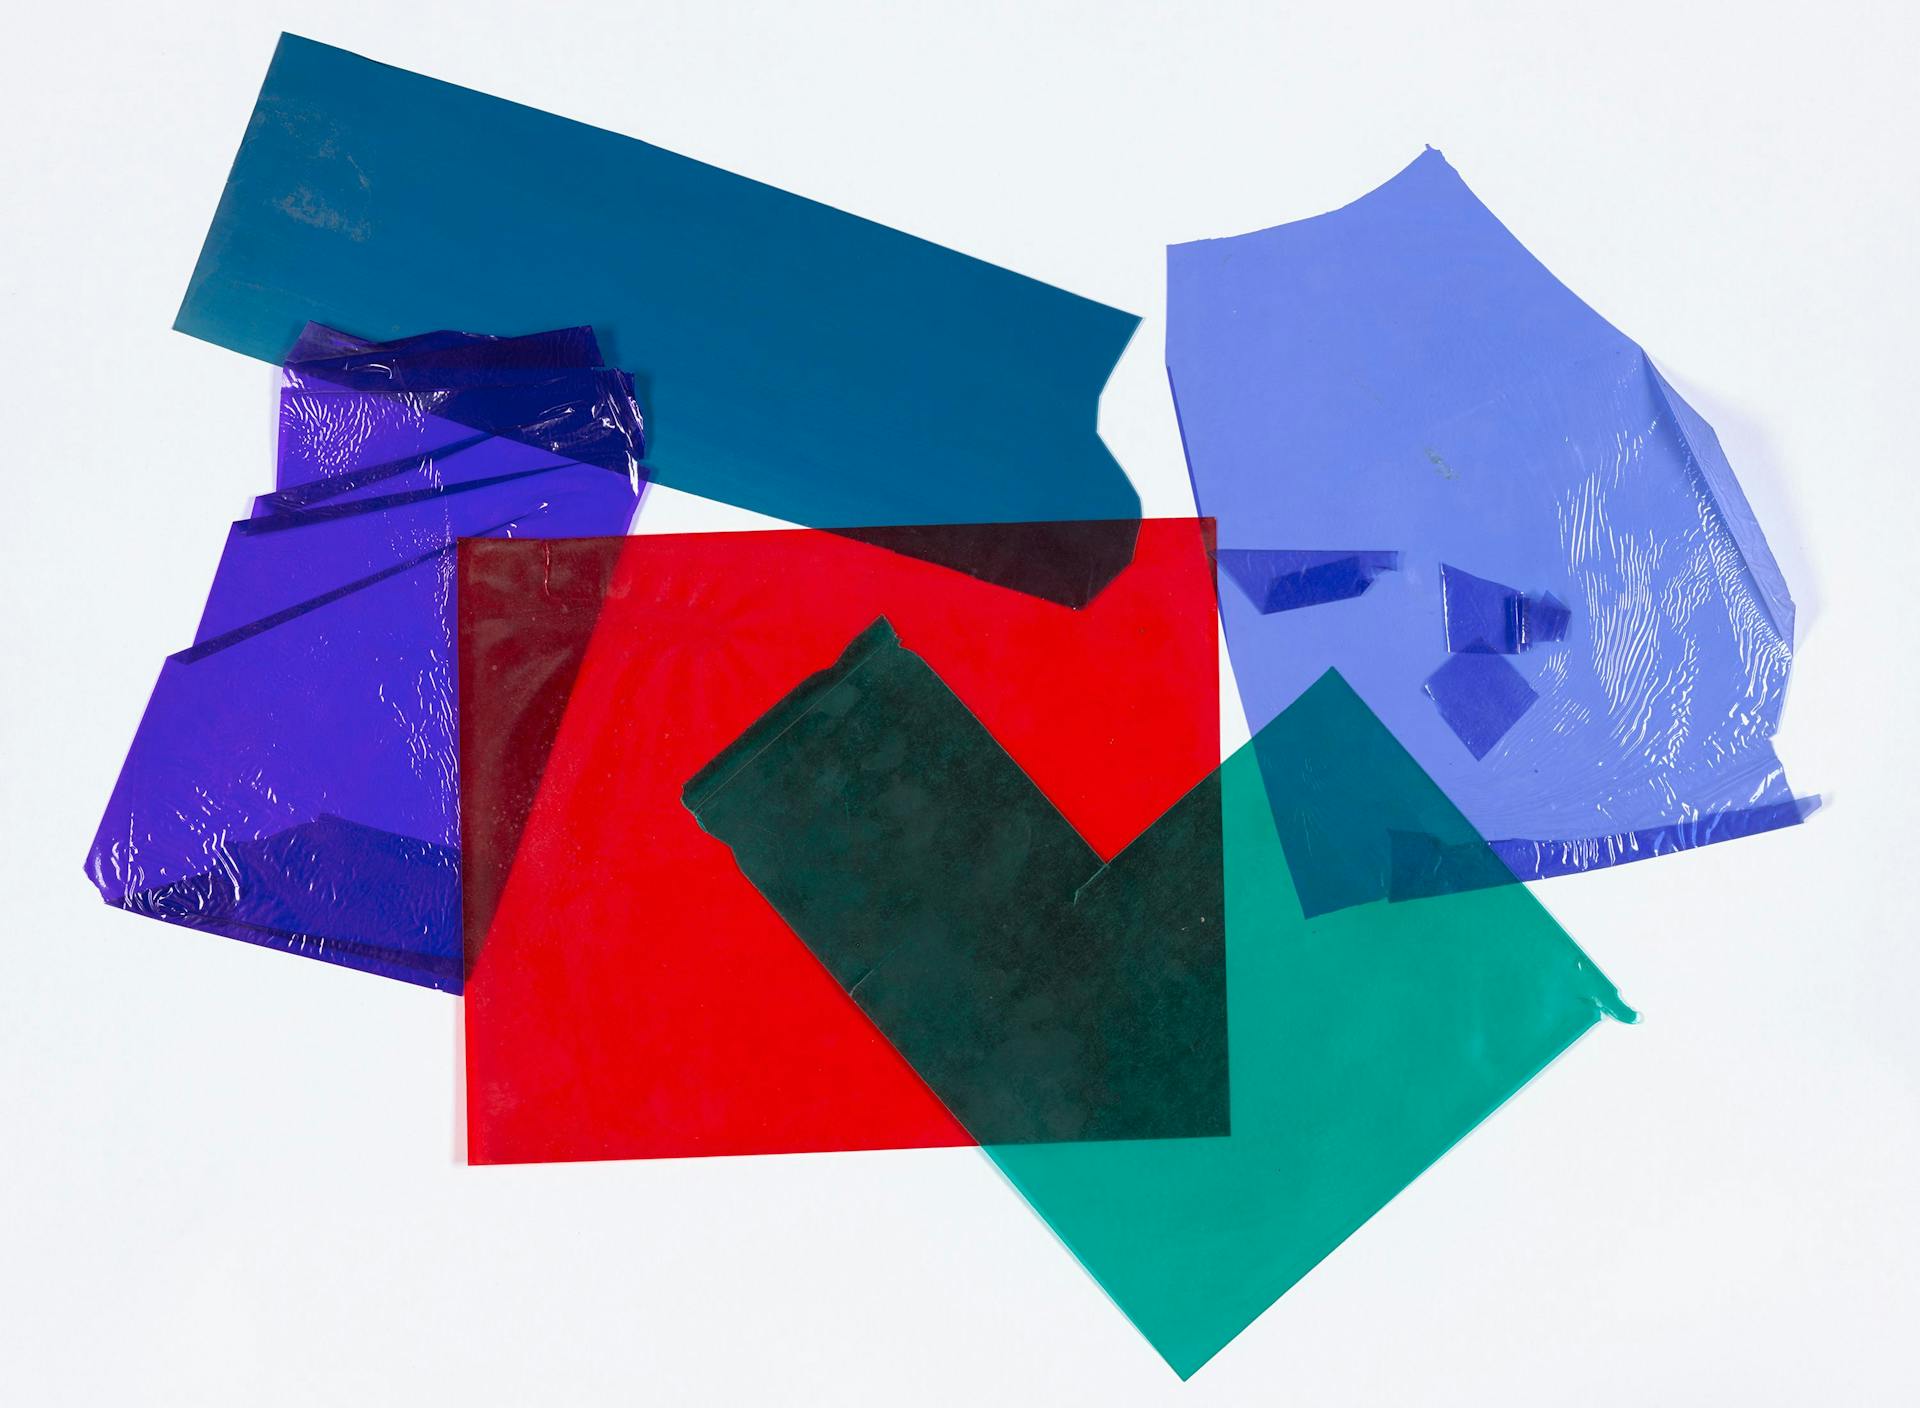 Voorbeelden van plasticfolies met verschillende diktes en kleuren in het archief van Johan Niegeman, tijdens zijn docentschap aan het Instituut voor Kunstnijverheidsonderwijs in Amsterdam (1939-1955). Ze zijn aangetroffen in het dossier ‘werk v… 